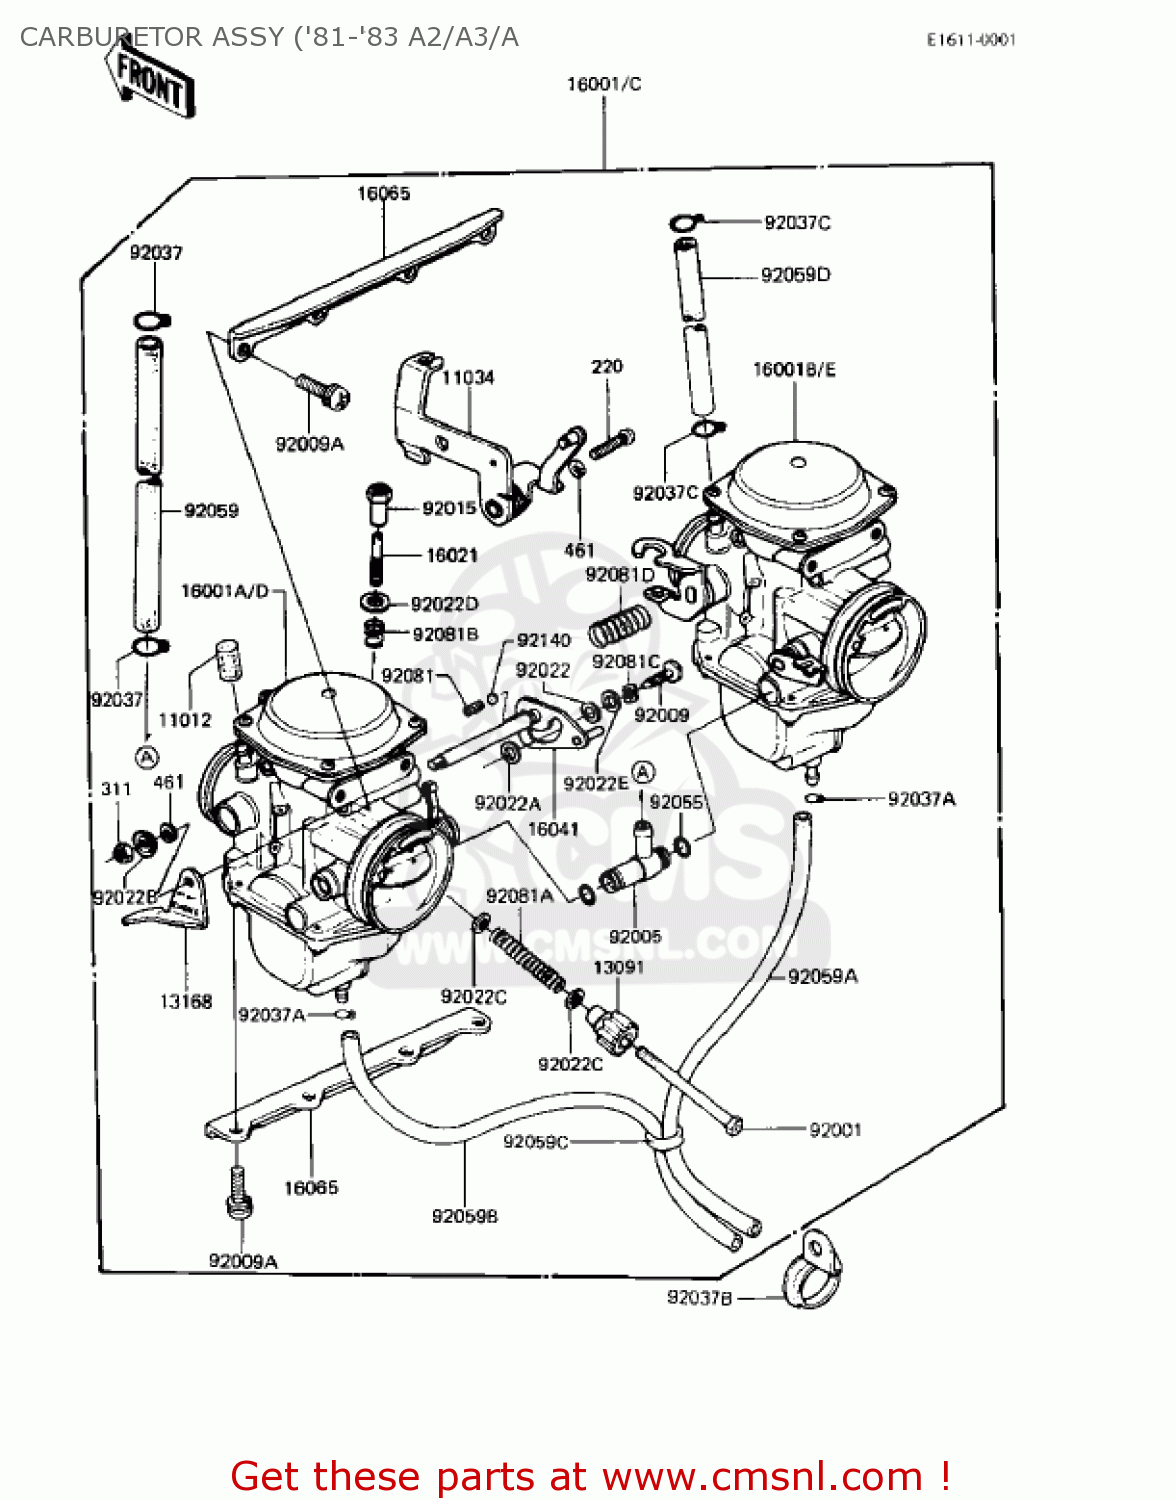 Arctic Cat 300 Carburetor Diagram